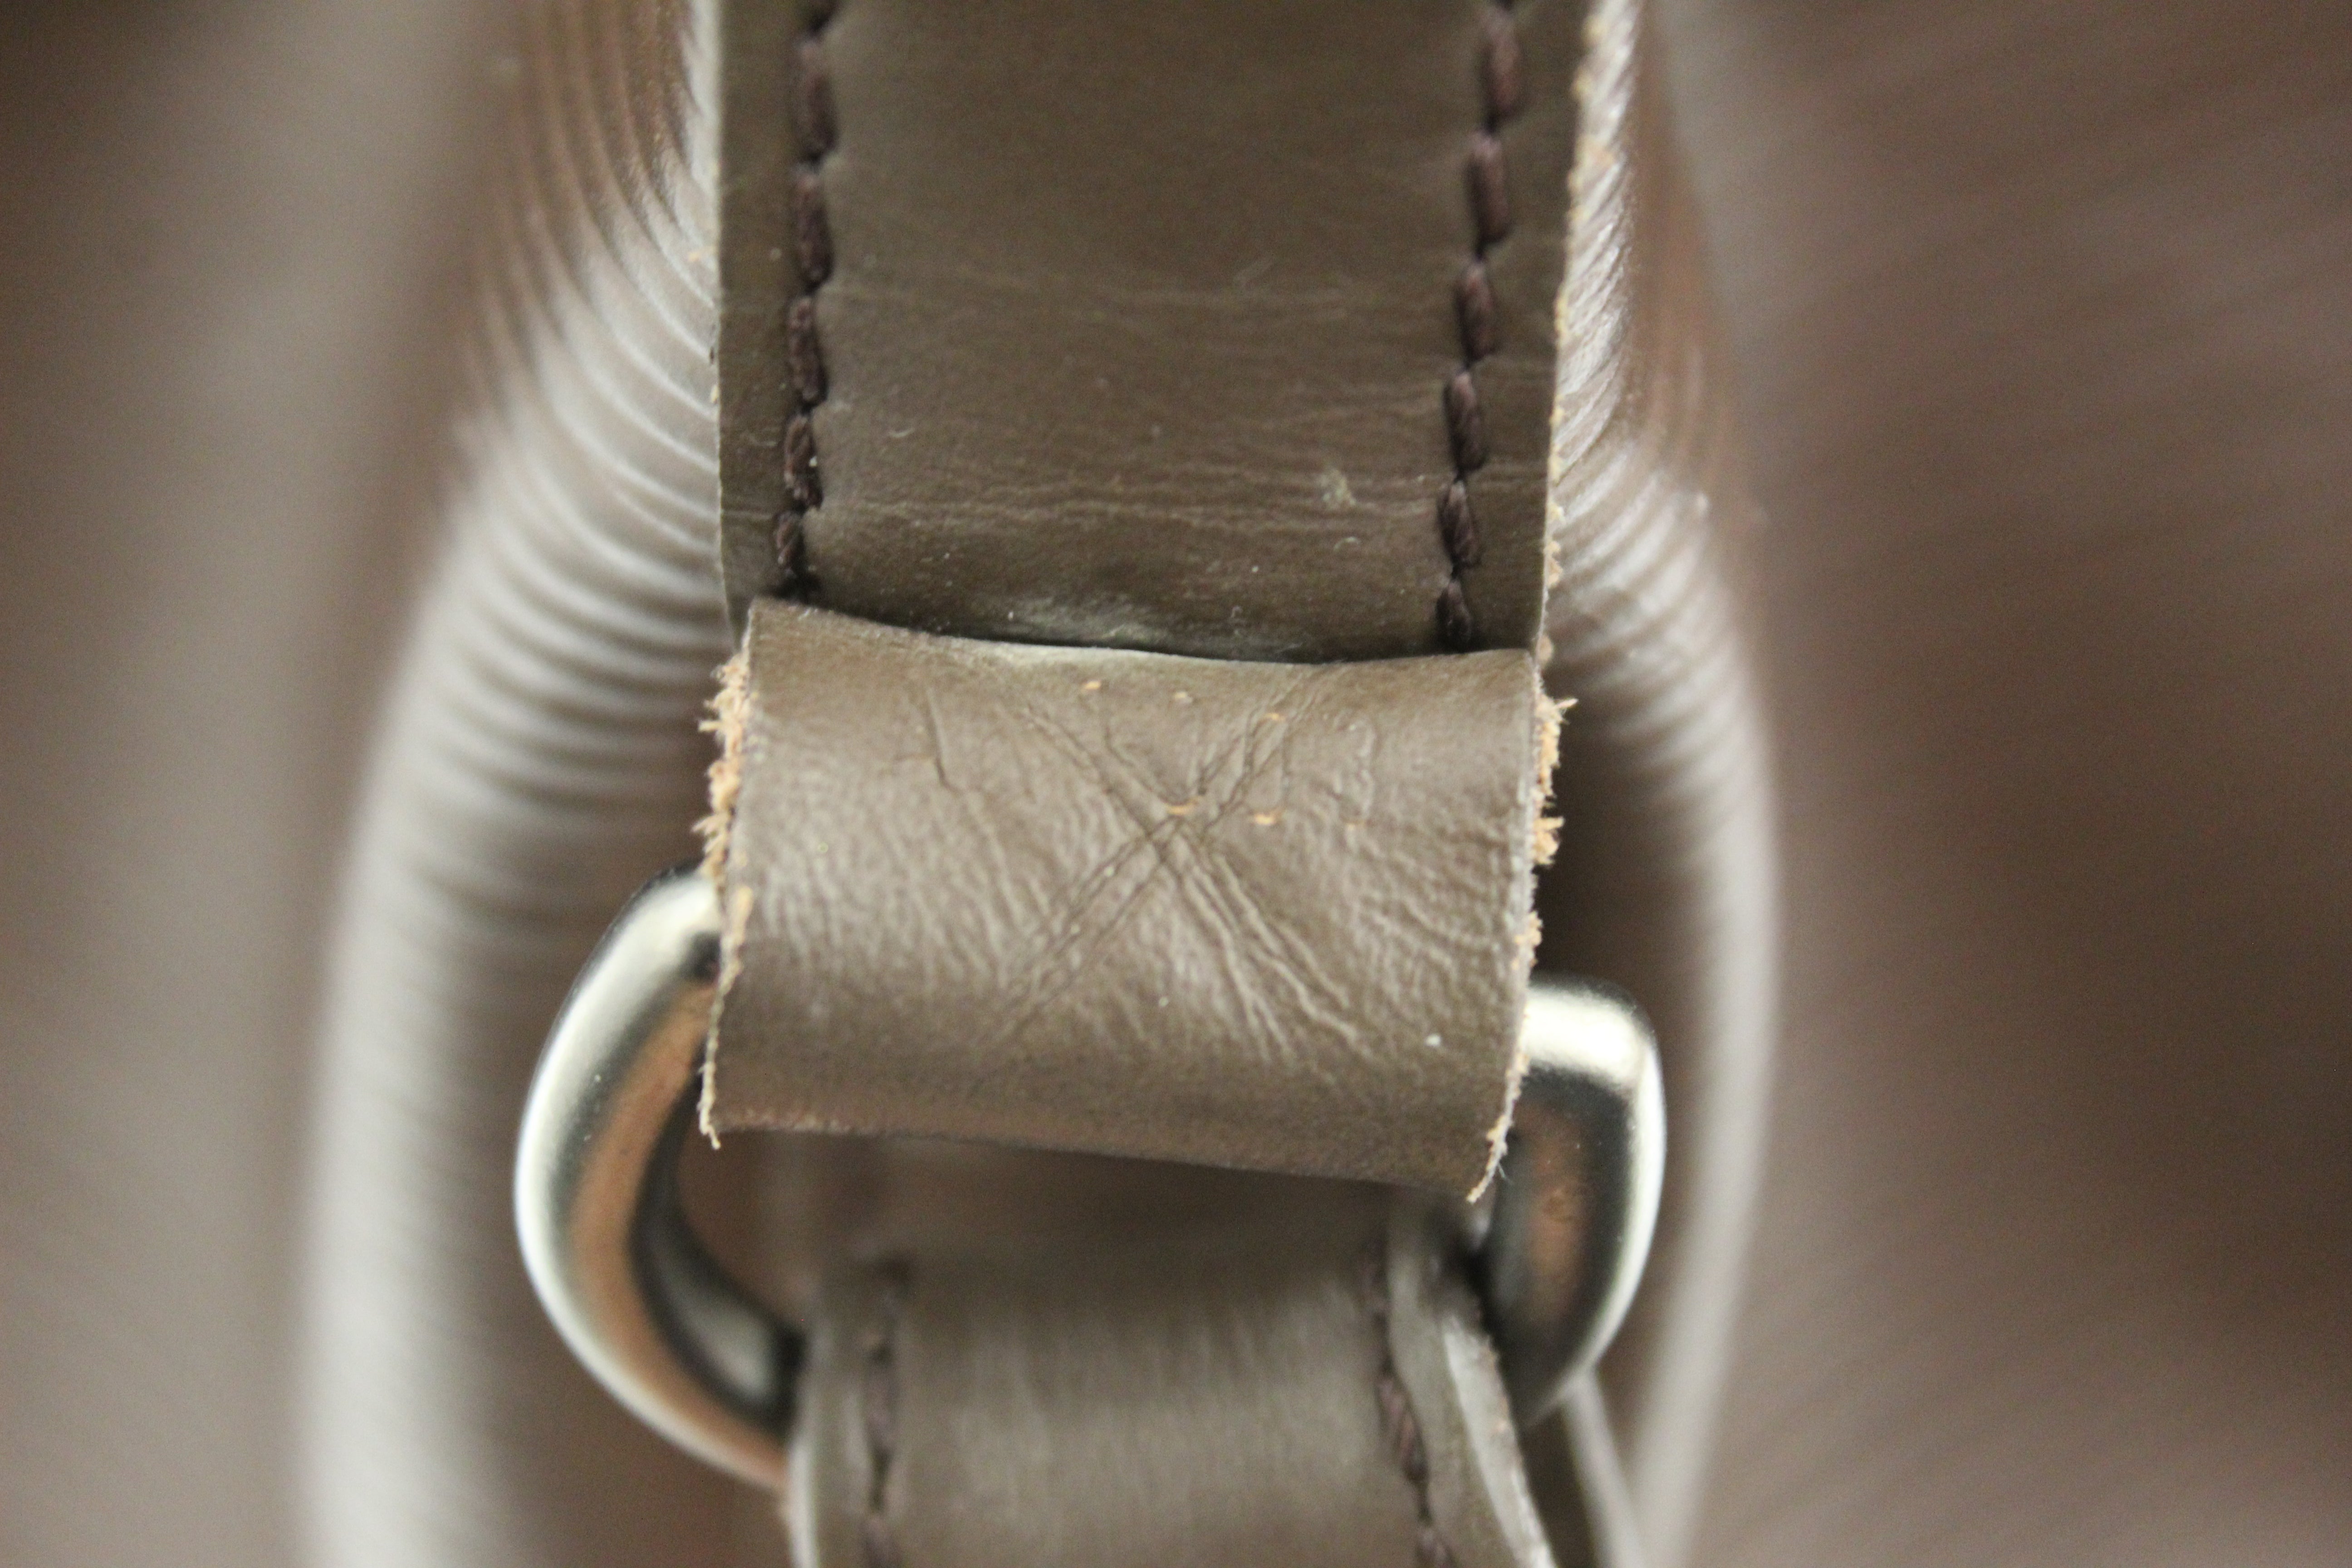 Authentic Louis Vuitton Epi Brown Leather Large Noe Shoulder Bag